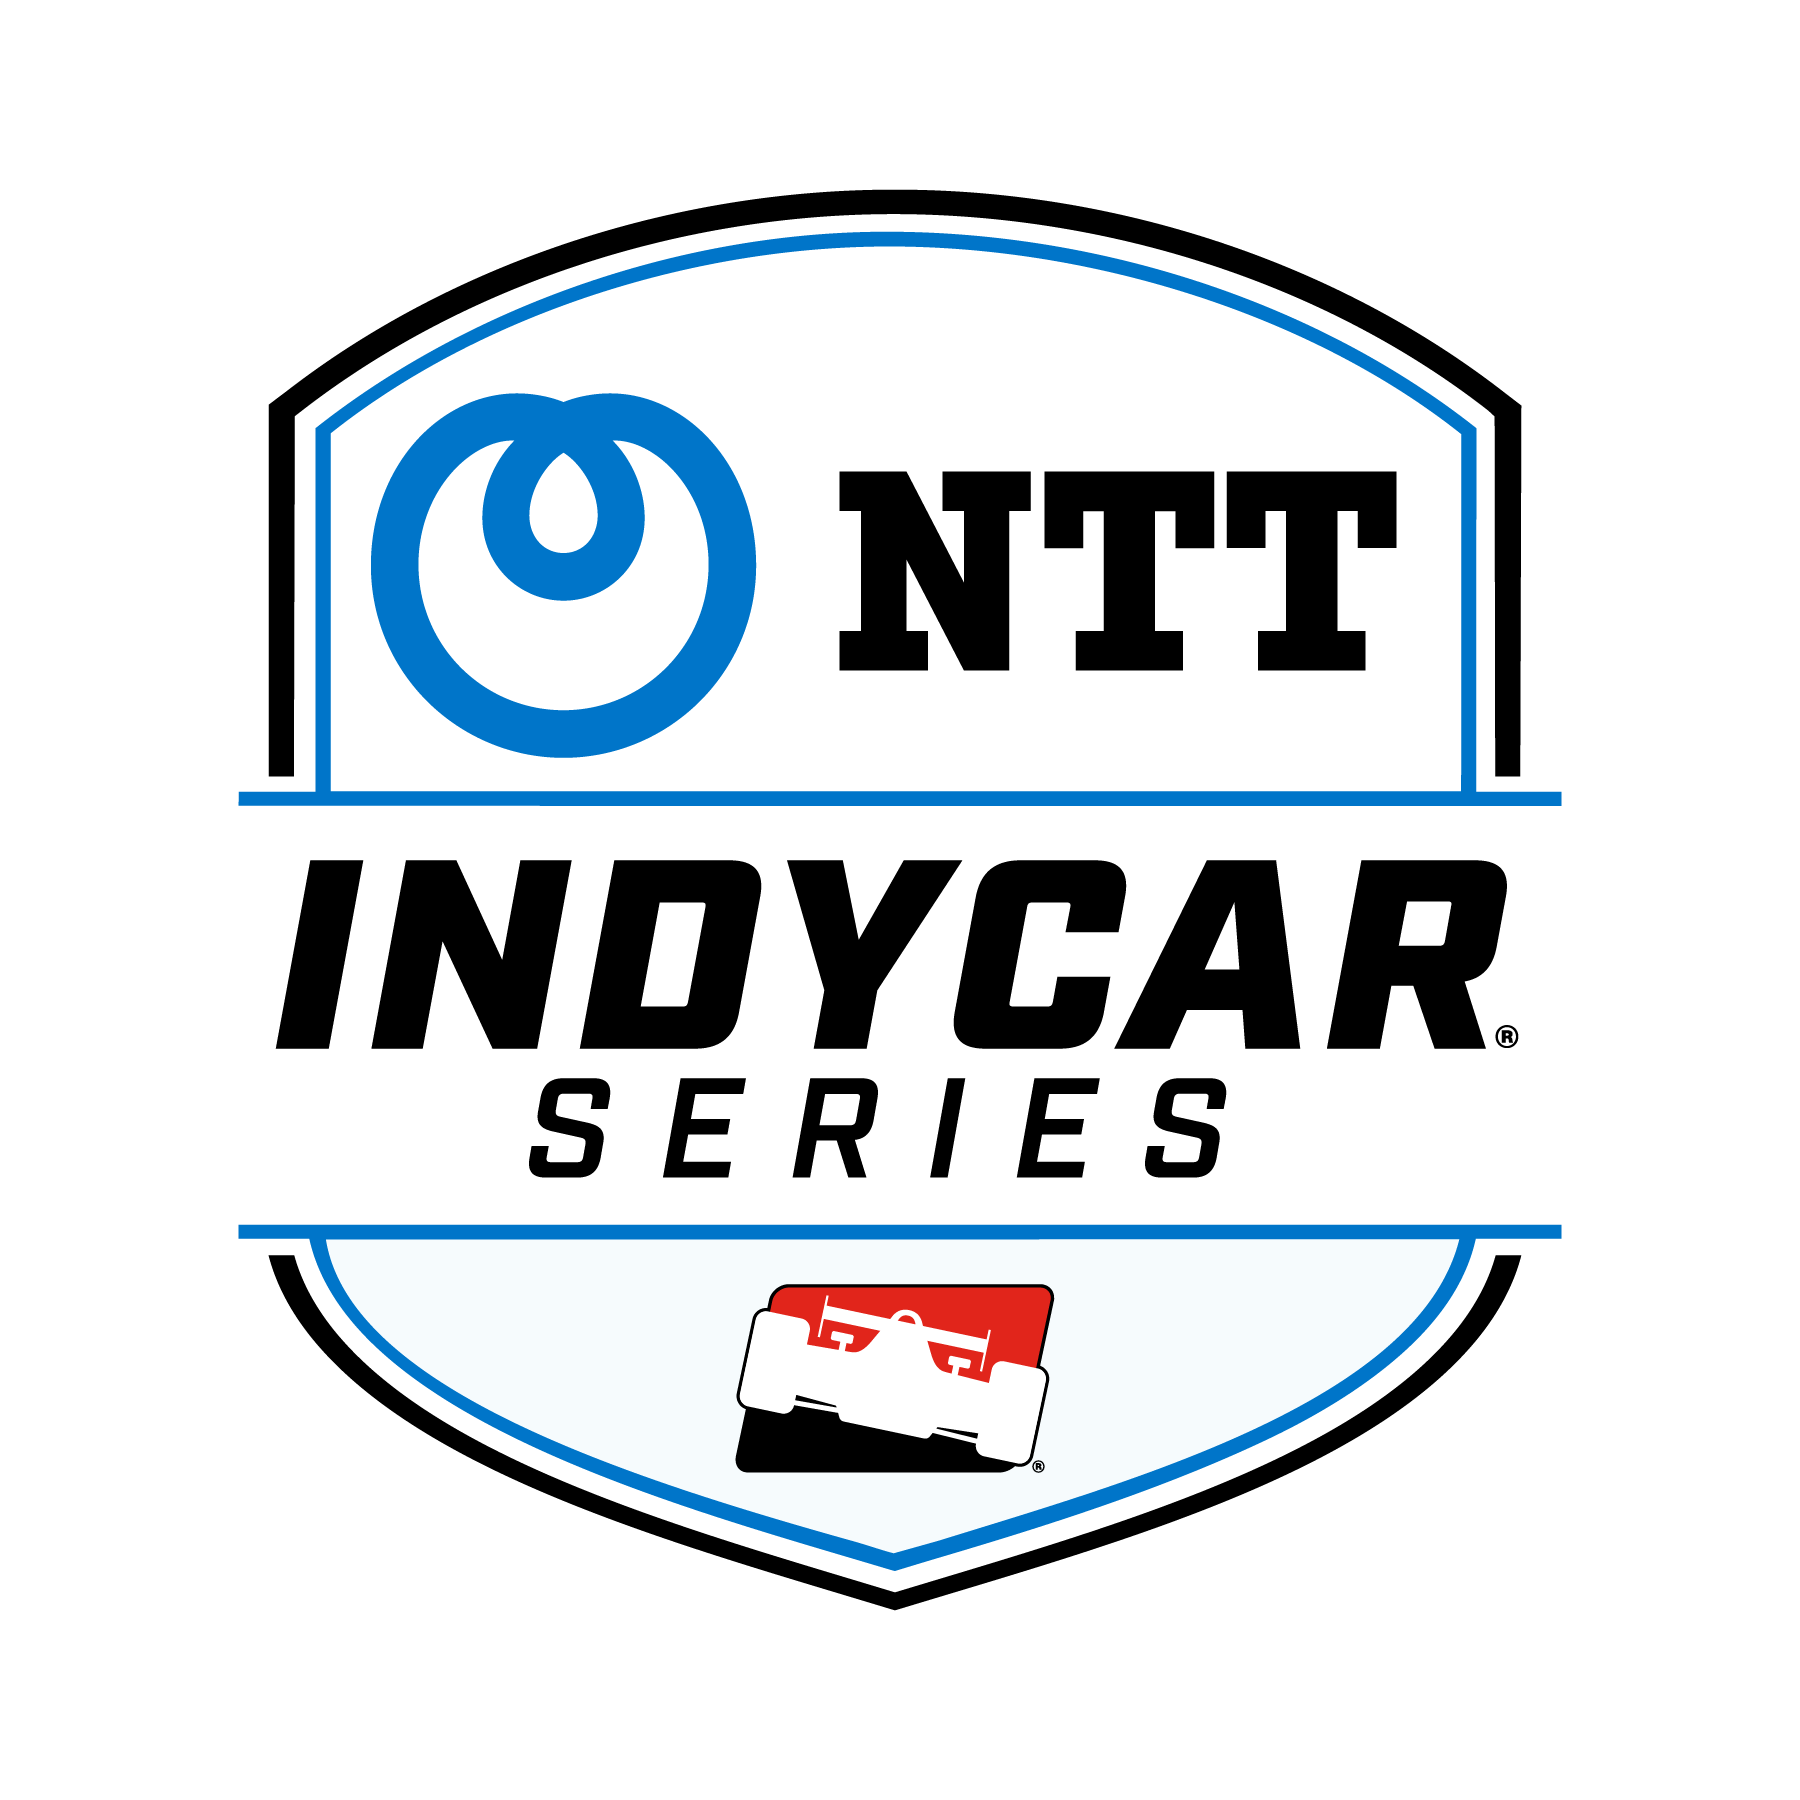 NTT_ICS_RGB_POS